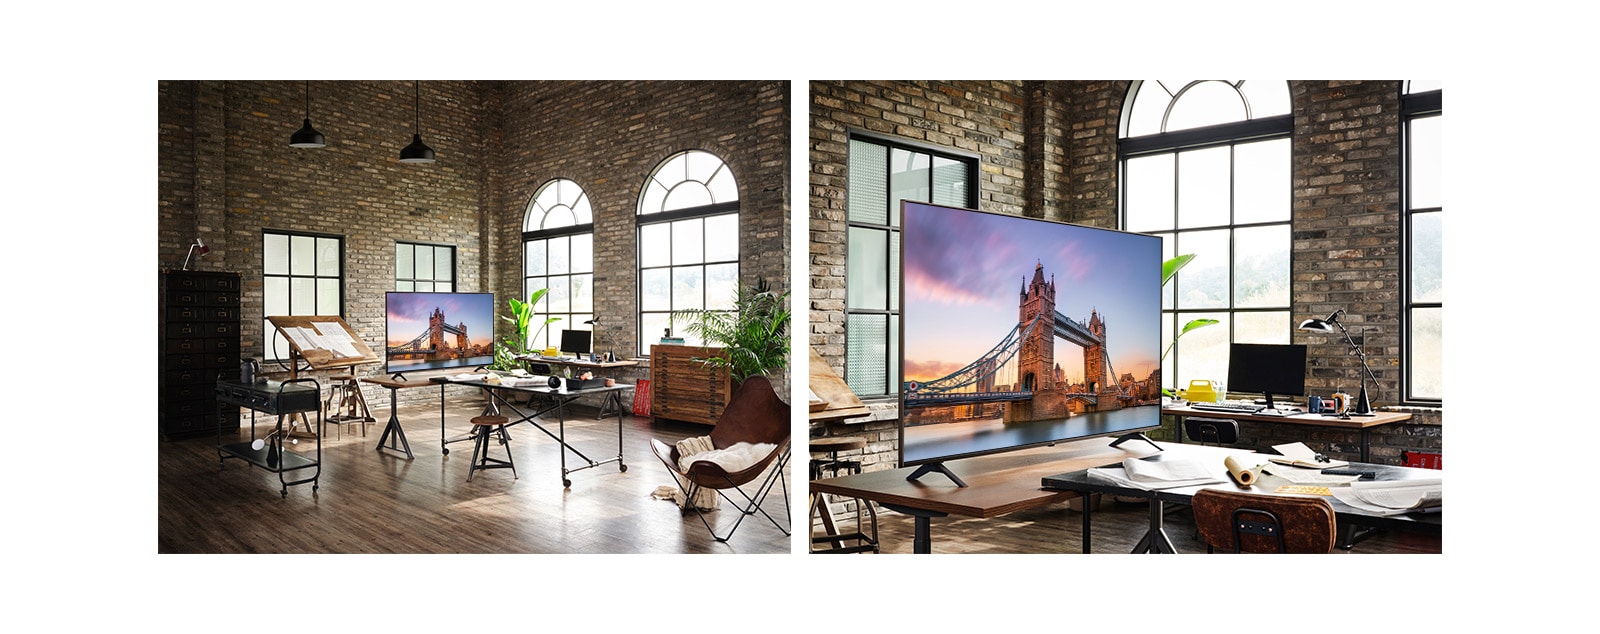 Egy TV-n a London Bridge képe látható egy antik dolgozószobában. A London Bridge képét megjelenítő TV közelített képe, mely egy asztalon áll egy antik dolgozószobában.